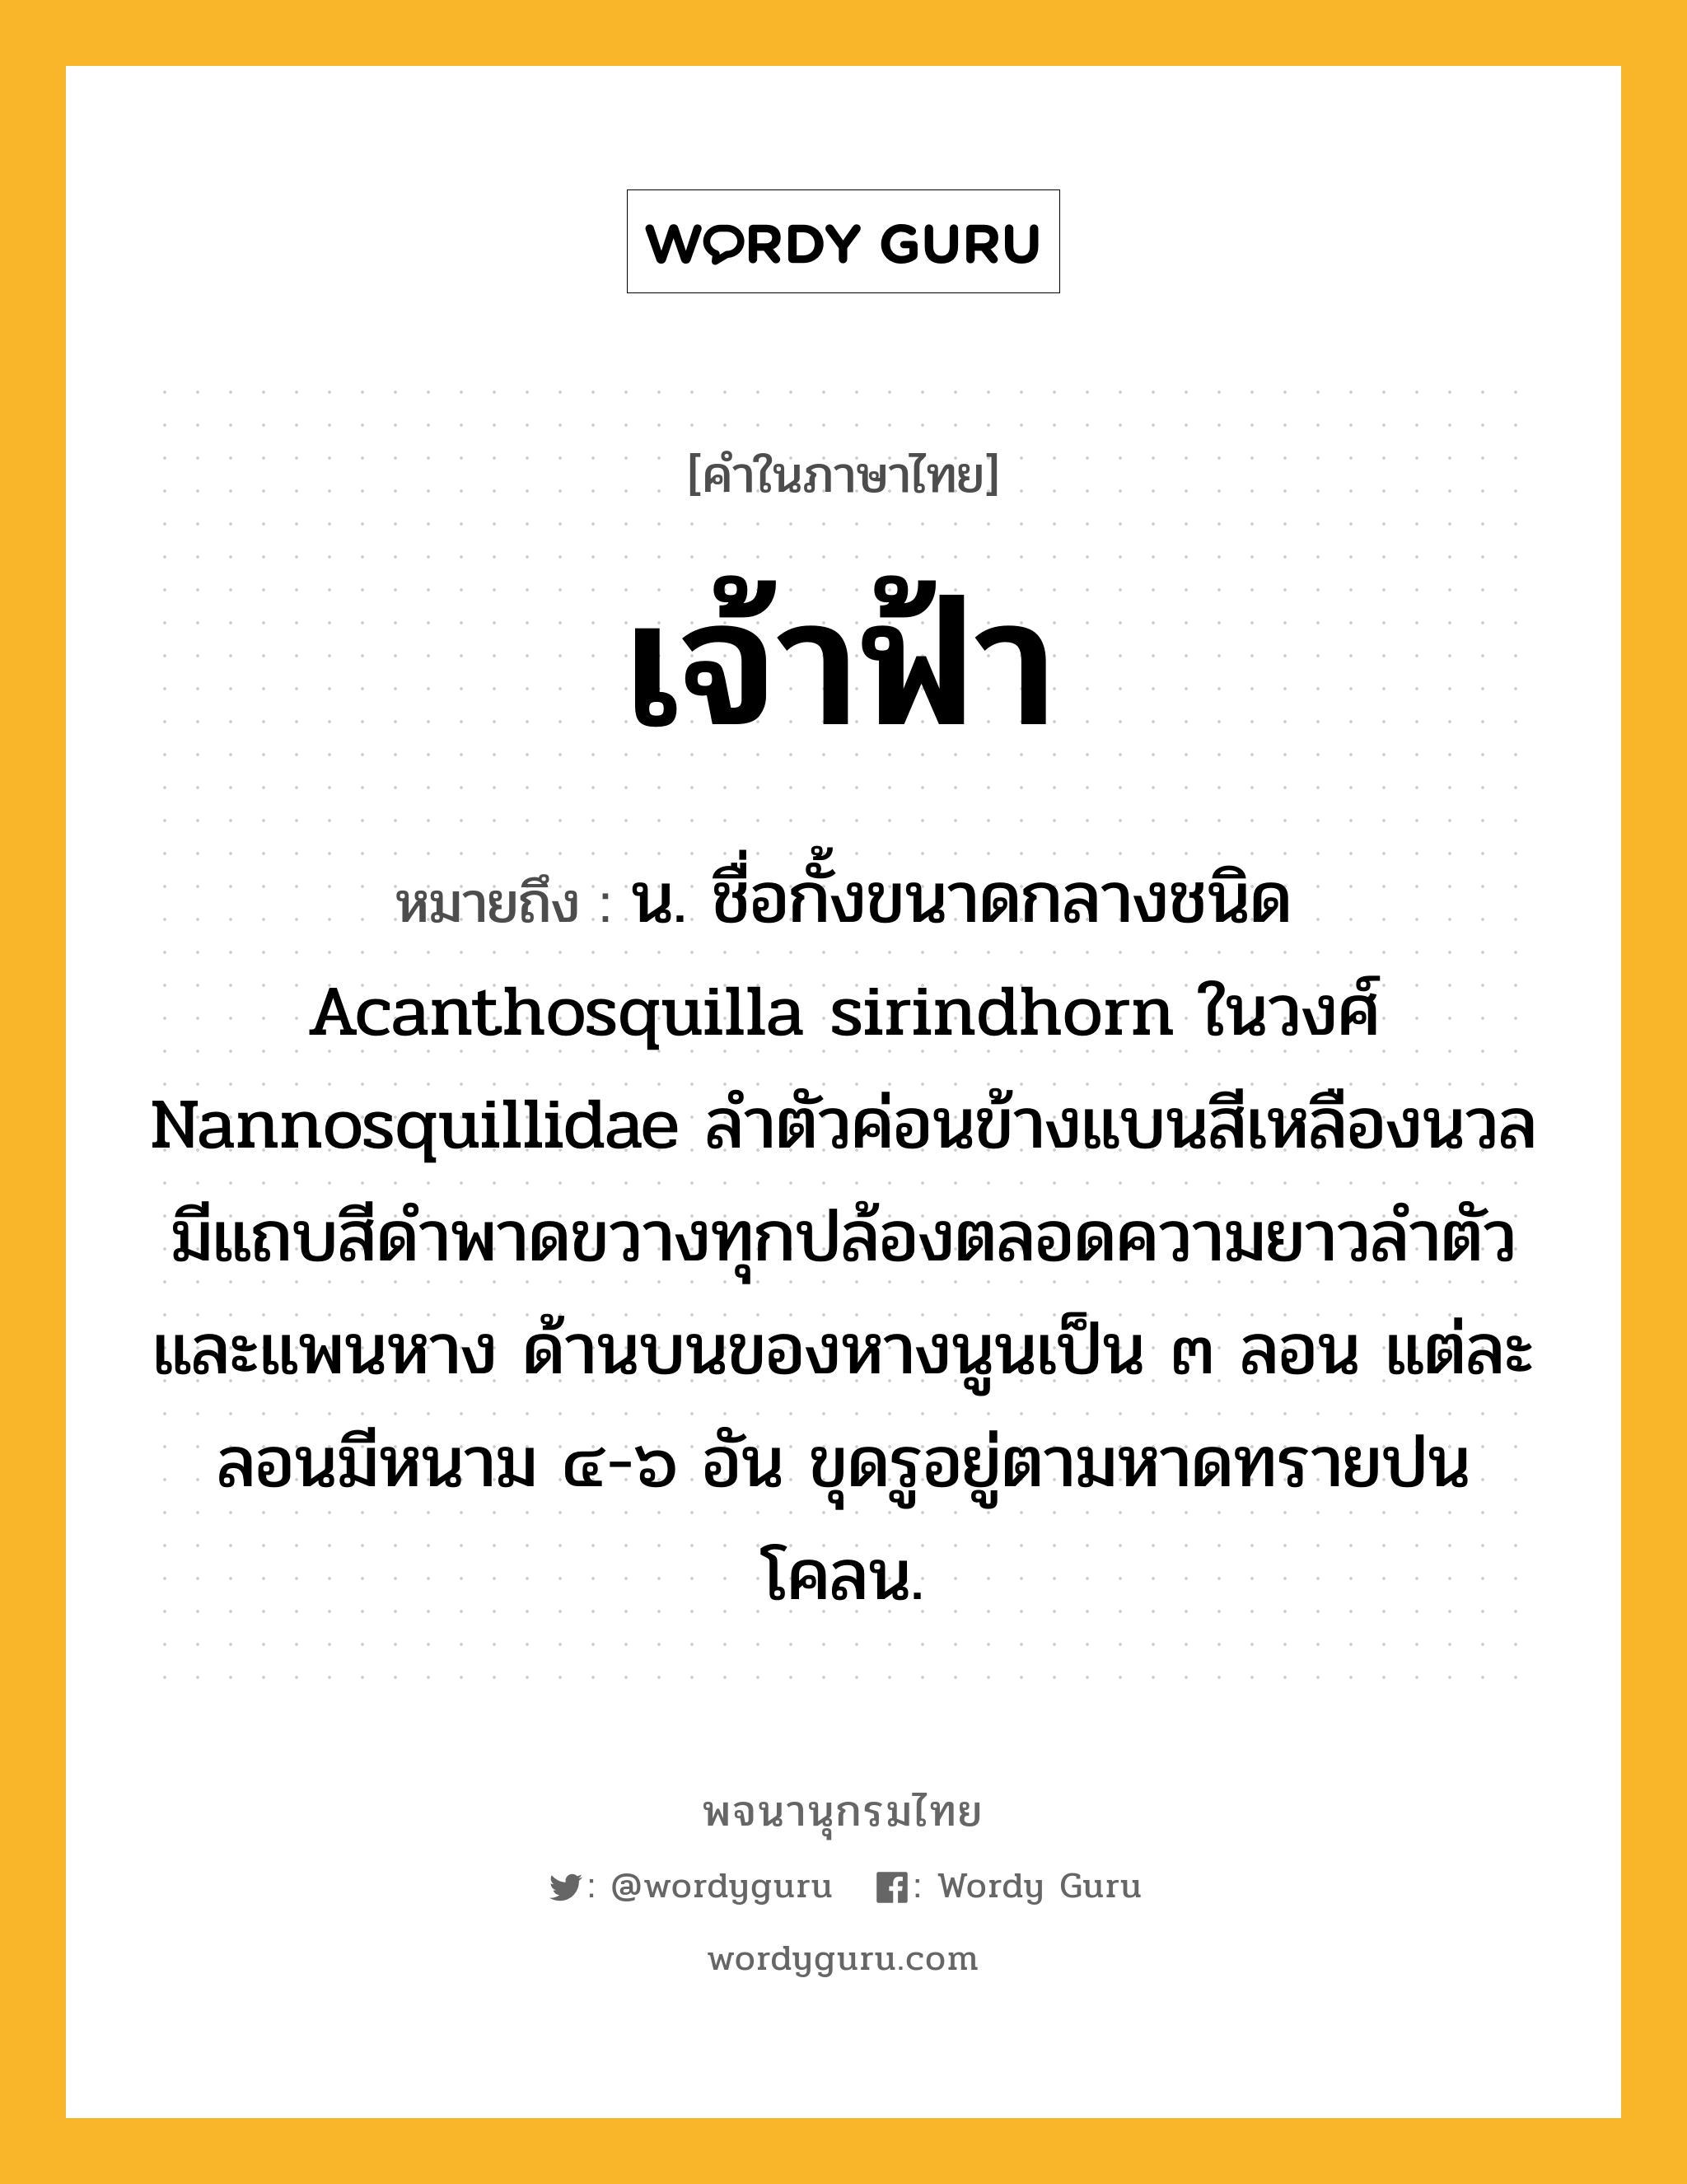 เจ้าฟ้า ความหมาย หมายถึงอะไร?, คำในภาษาไทย เจ้าฟ้า หมายถึง น. ชื่อกั้งขนาดกลางชนิด Acanthosquilla sirindhorn ในวงศ์ Nannosquillidae ลำตัวค่อนข้างแบนสีเหลืองนวล มีแถบสีดำพาดขวางทุกปล้องตลอดความยาวลำตัวและแพนหาง ด้านบนของหางนูนเป็น ๓ ลอน แต่ละลอนมีหนาม ๔-๖ อัน ขุดรูอยู่ตามหาดทรายปนโคลน.